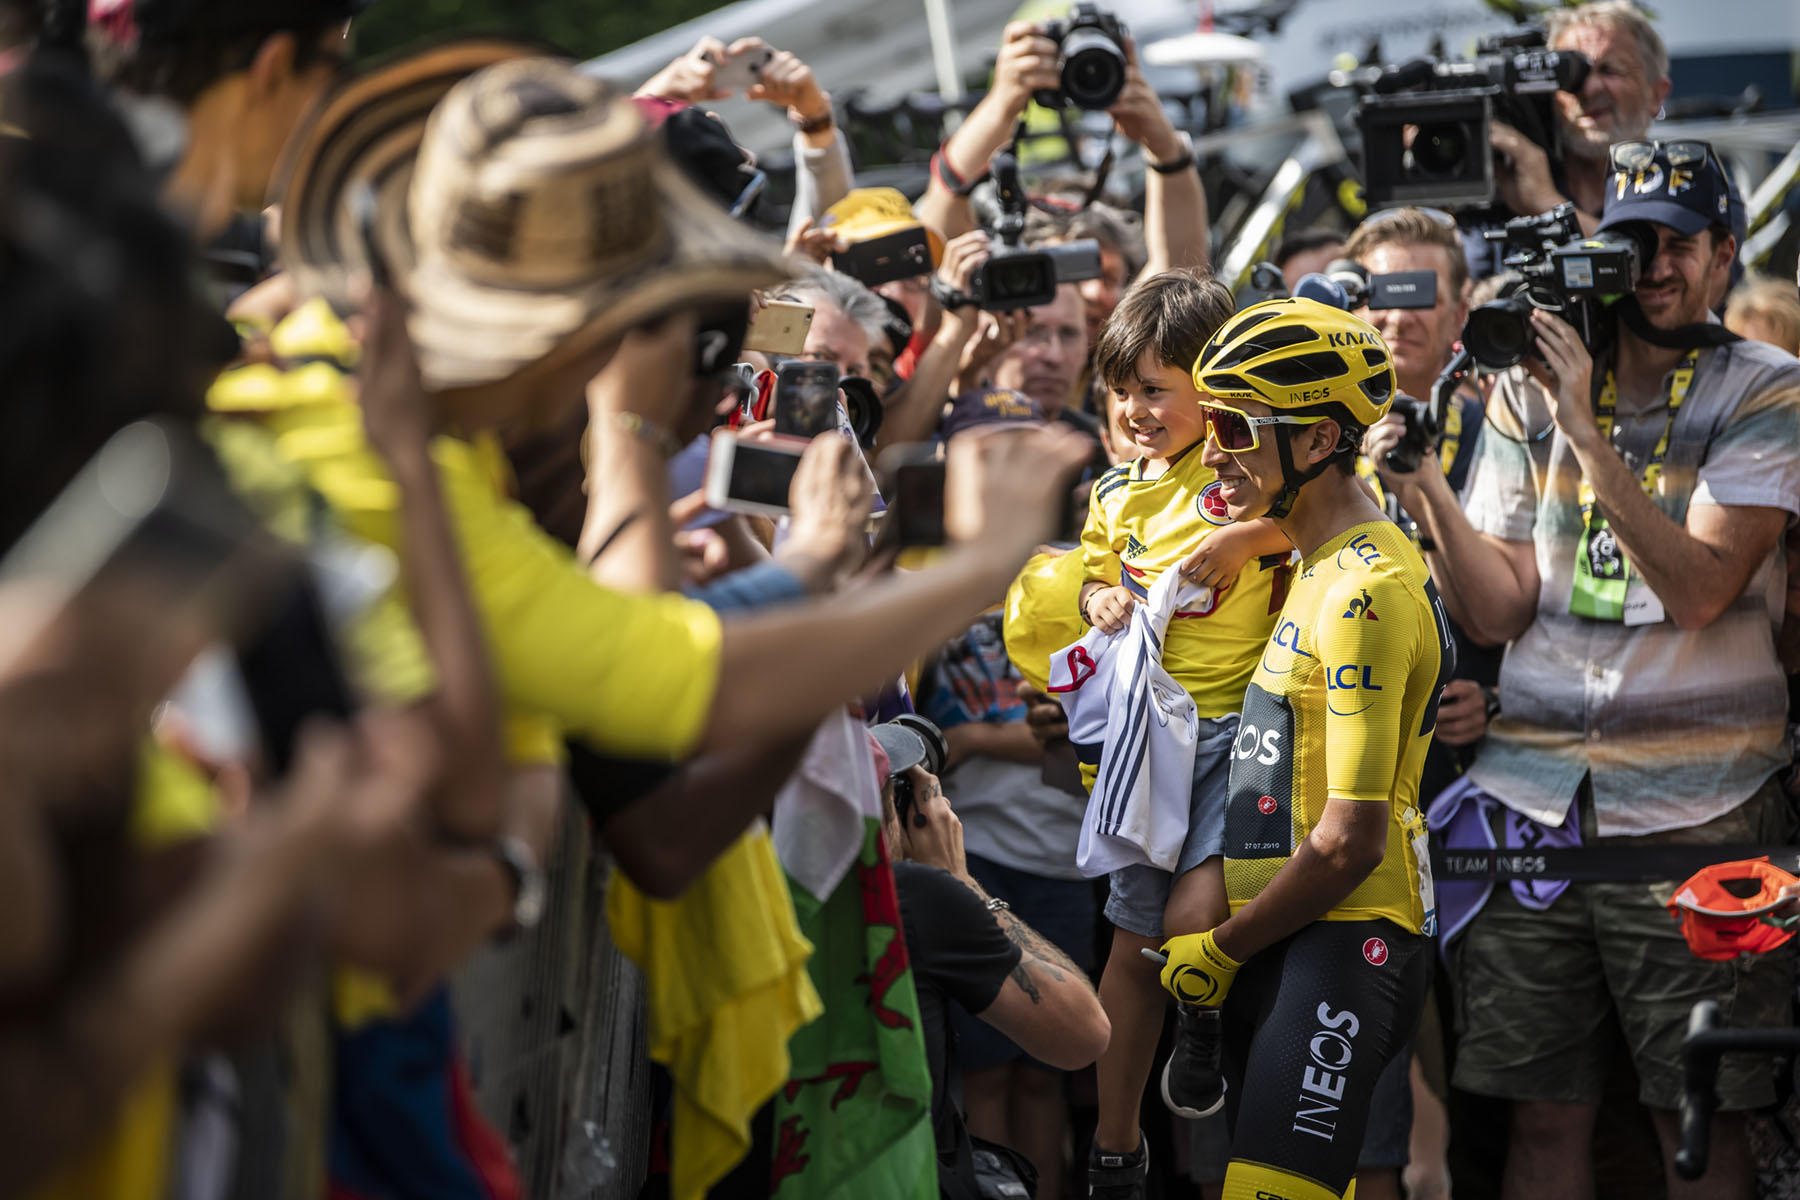 Tour de France 2019 - Stage Twenty One - Egan Bernal celebrates with fans